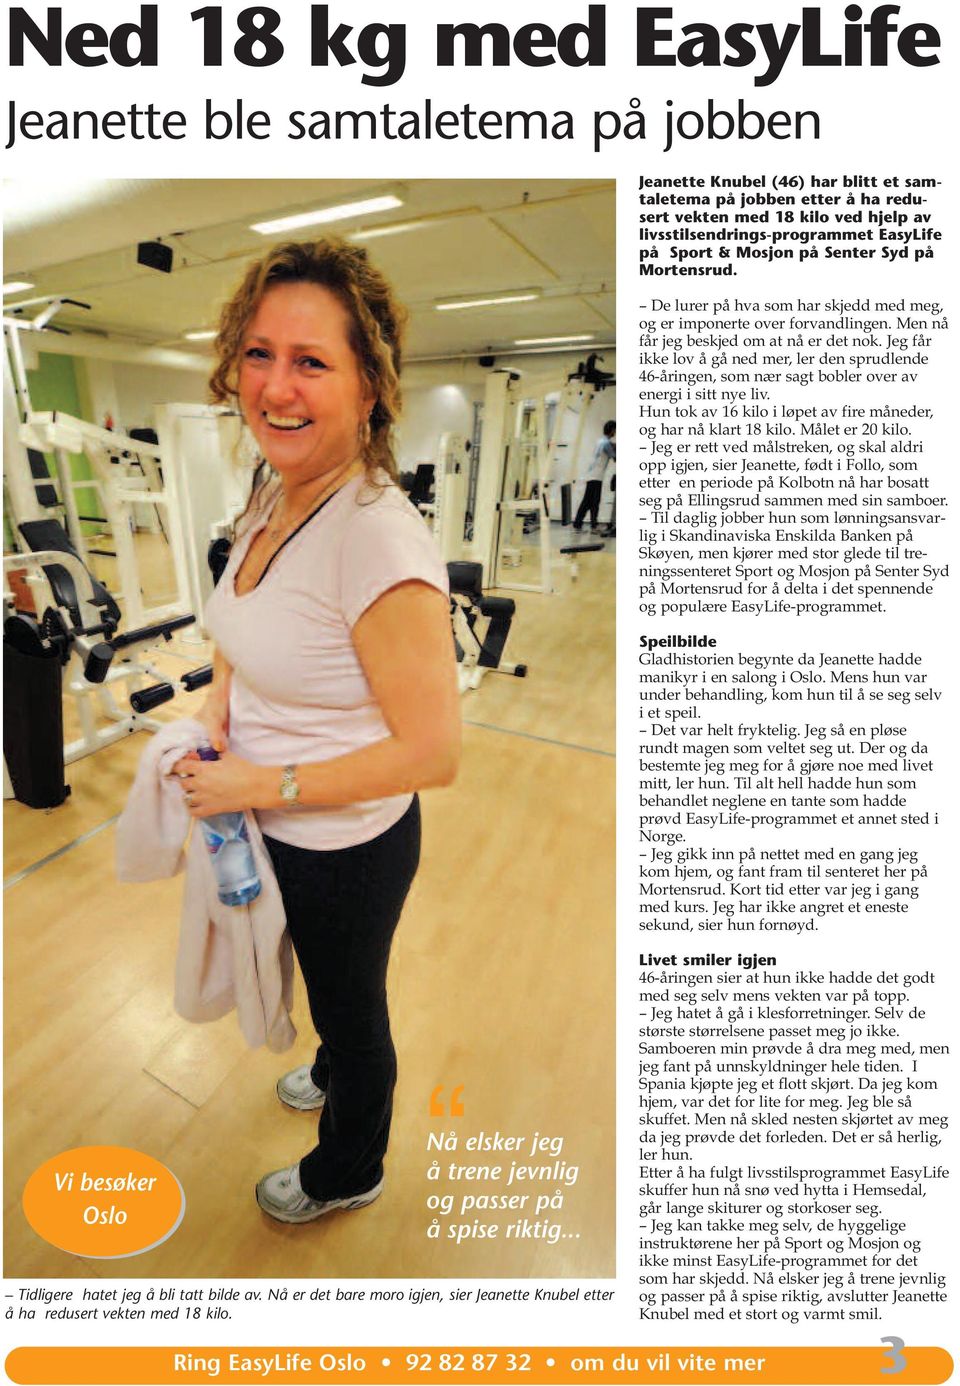 Jeanette Knubel (46) har blitt et samtaletema på jobben etter å ha redusert vekten med 18 kilo ved hjelp av livsstilsendrings-programmet EasyLife på Sport & Mosjon på Senter Syd på Mortensrud.